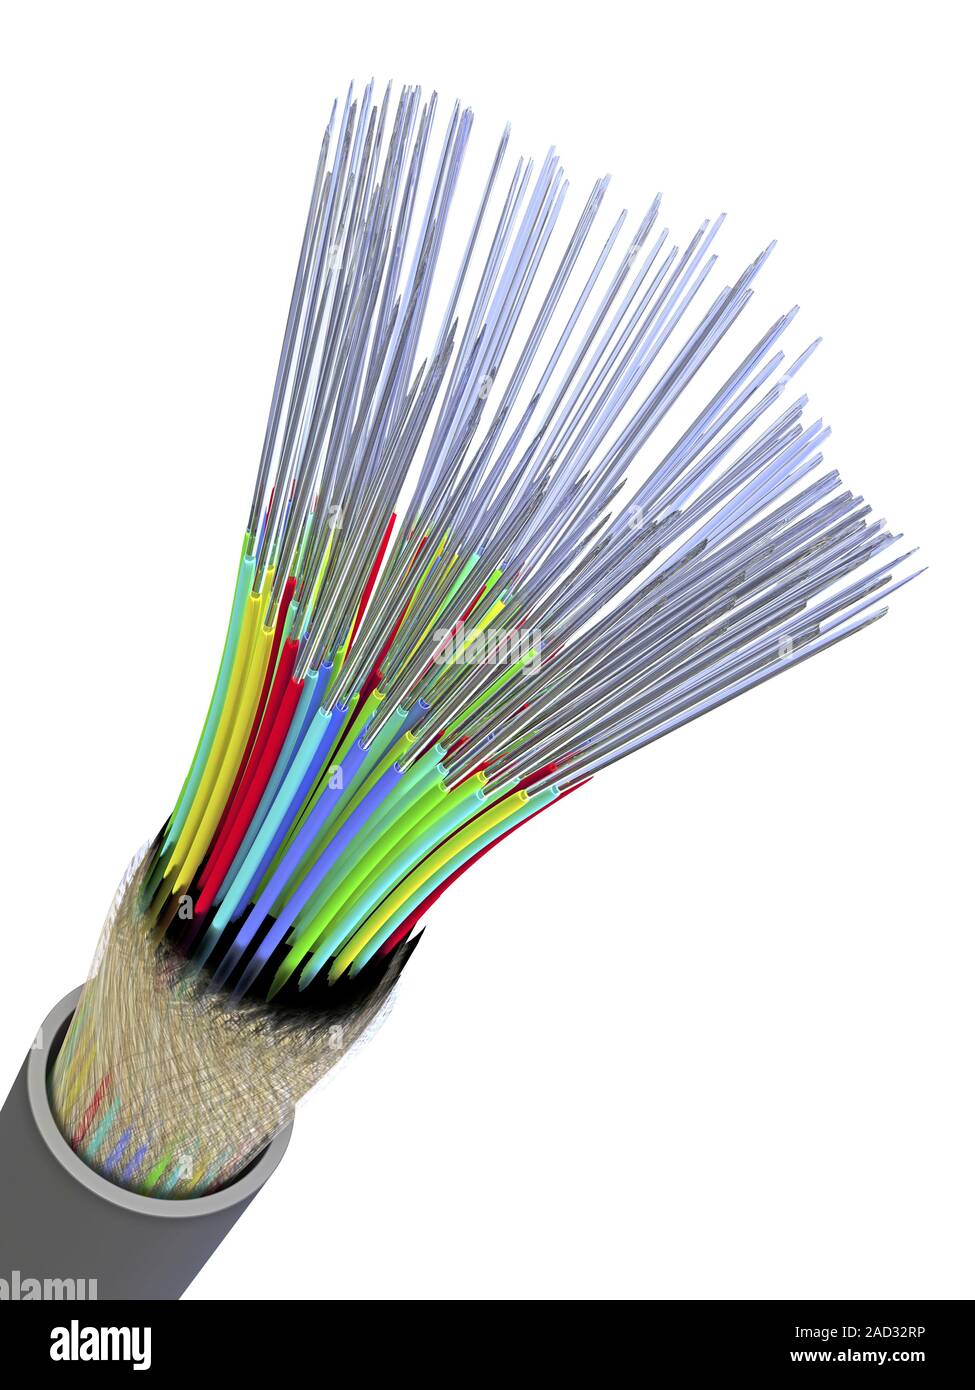 Cable de fibra óptica, que contiene un haz de fibras ópticas que la  realización de la luz. Estas fibras están hechas de cristal muy puro que  está recubierto con el fin de